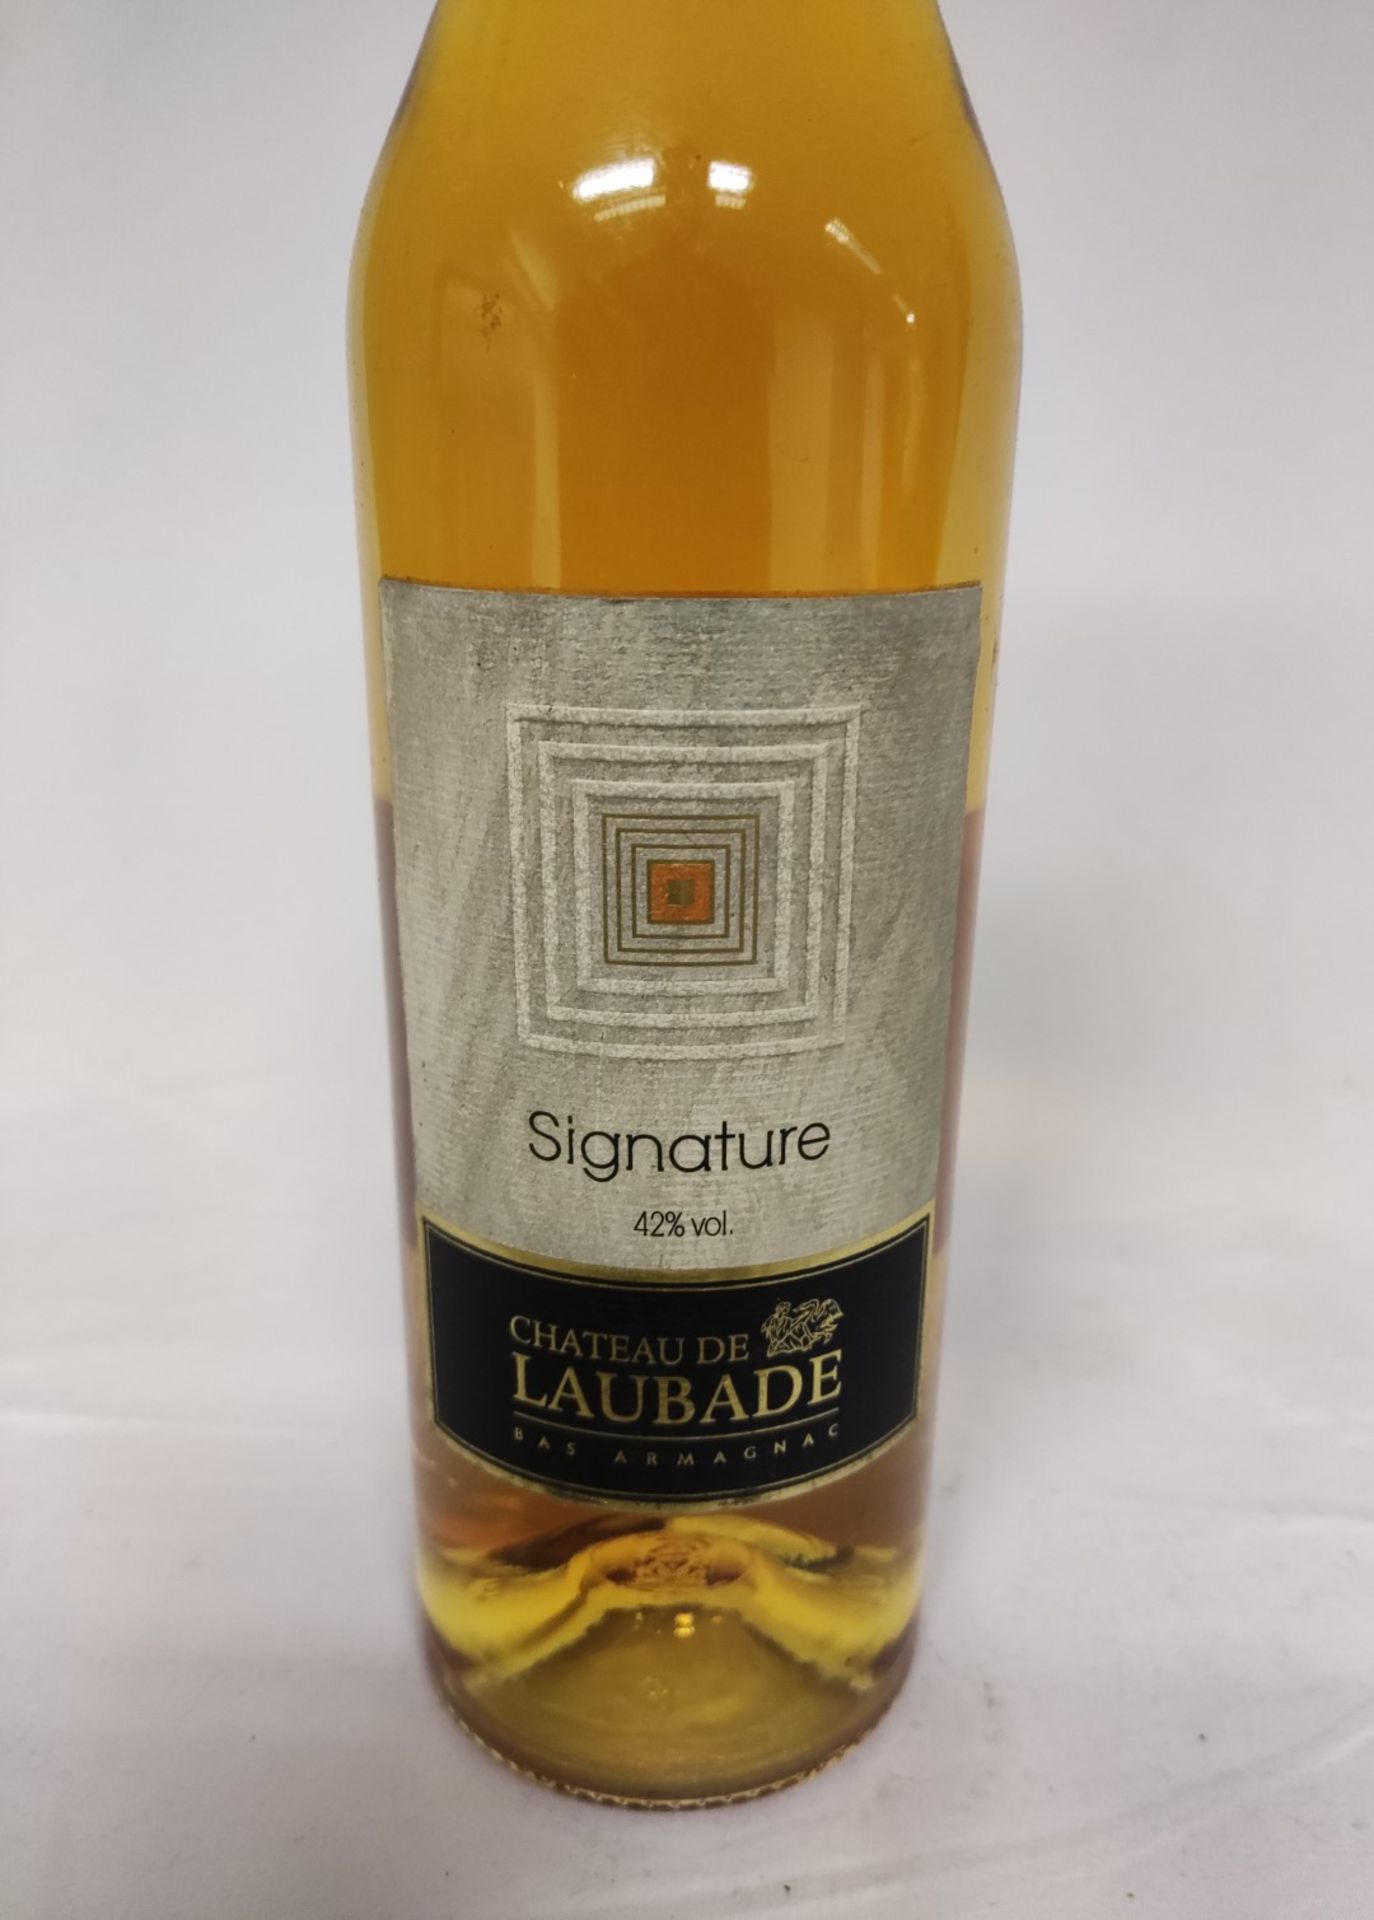 1 x Bottle of Chateau De Laubade Signature Armagnac Vs 42% - RRP £36 - Image 6 of 7